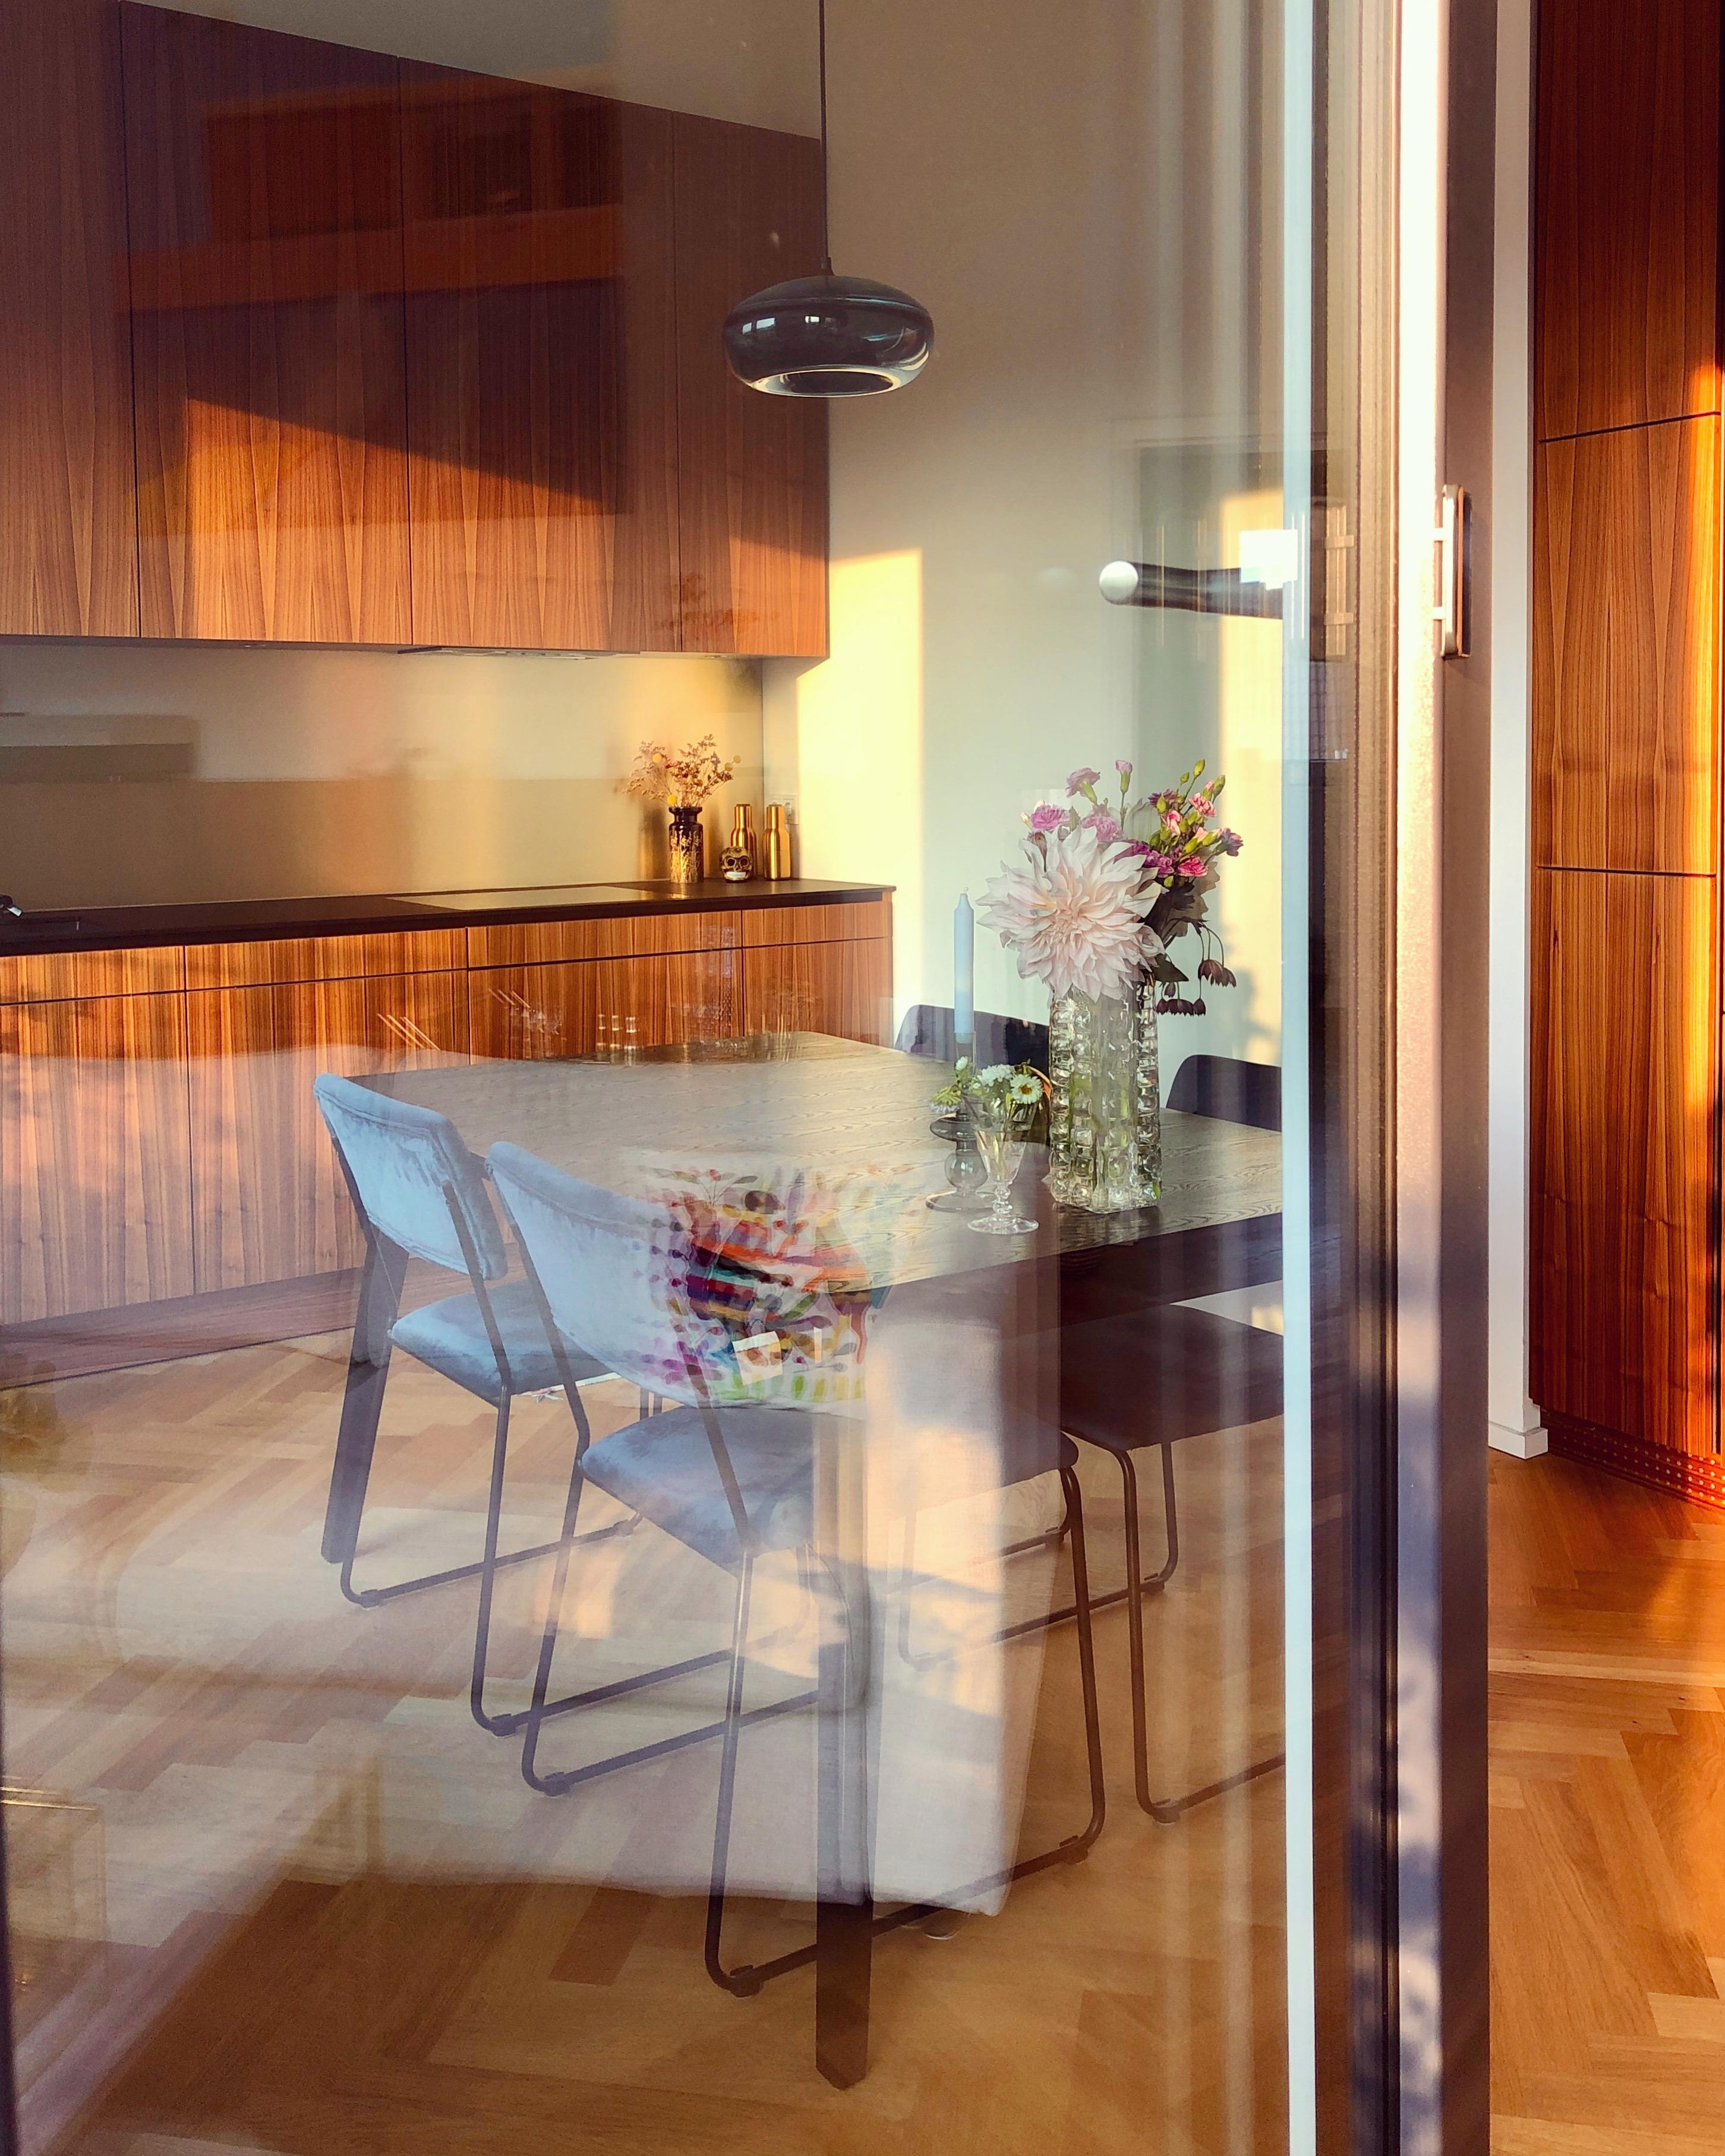 Unser #Esszimmer ist gleichzeitig #Küche, #Wohnraum und #Arbeitsplatz. #livingchallenge